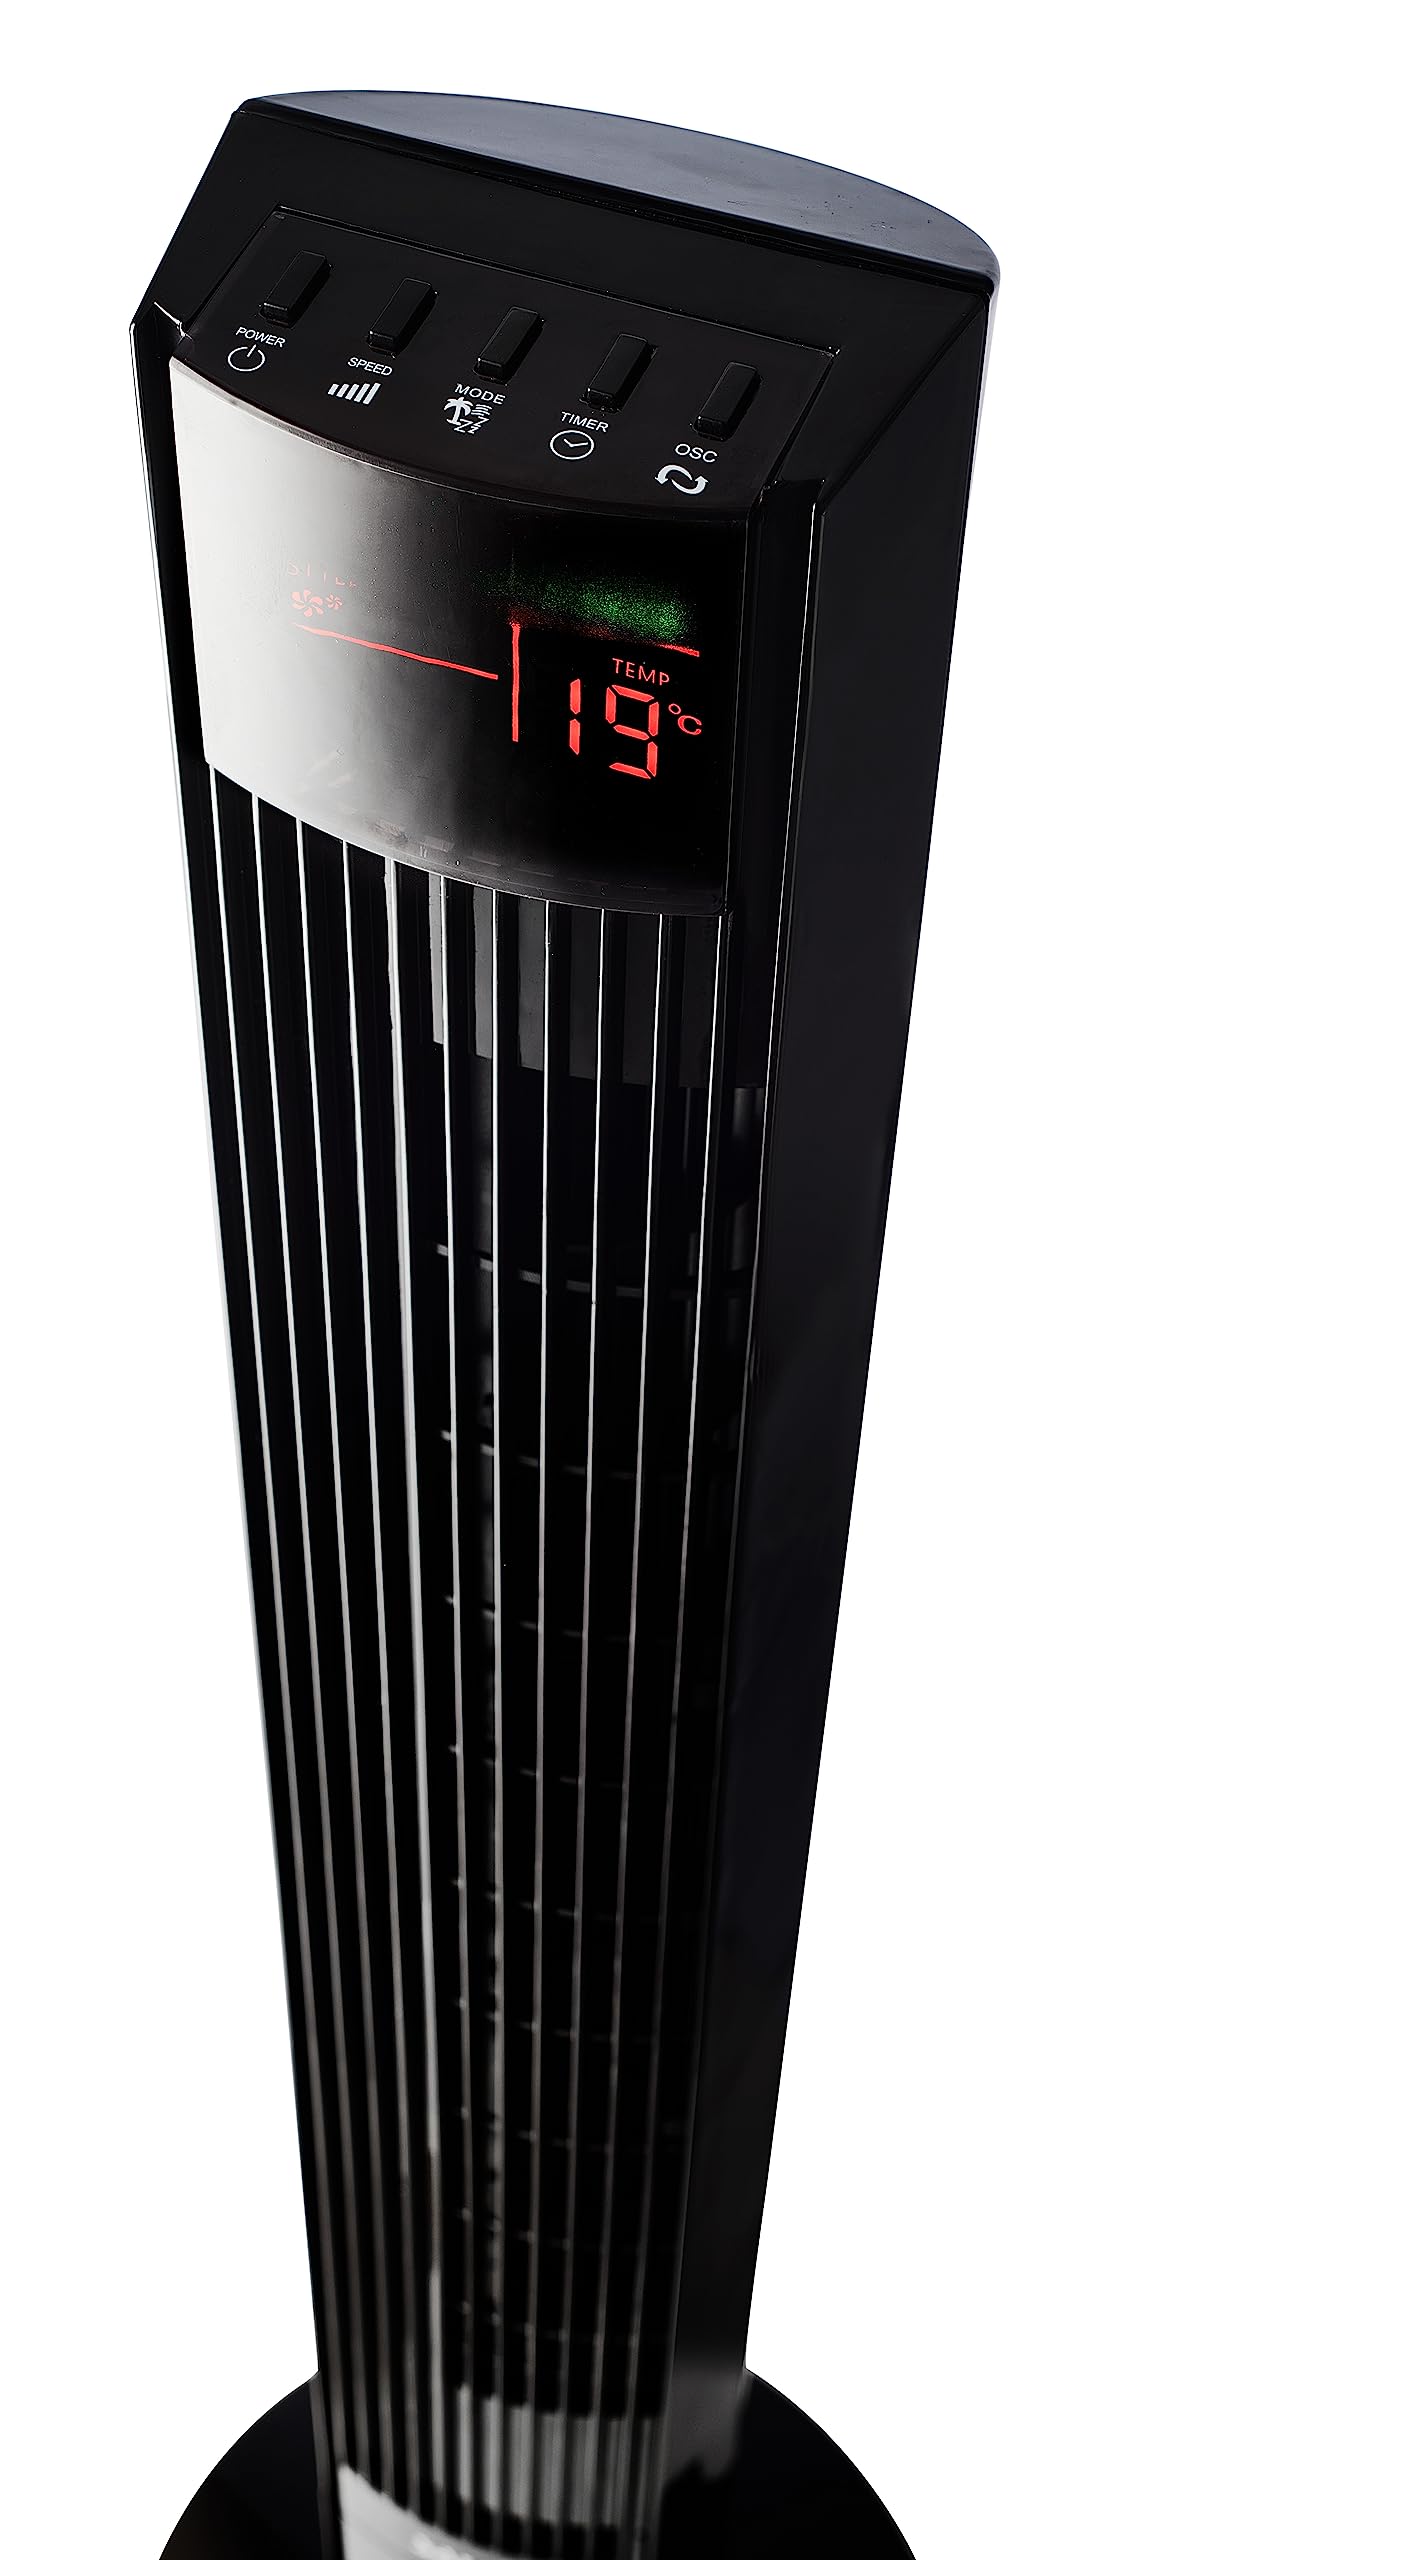 Salco Turmventilator KLT-2046, Tower-Fan, Air-Cooler, Lüfter, mit Fernbedienung, schwarz, 3 Geschwindigkeits-&Windstufen, Timer, Oszillation - Abkühlung garantiert!